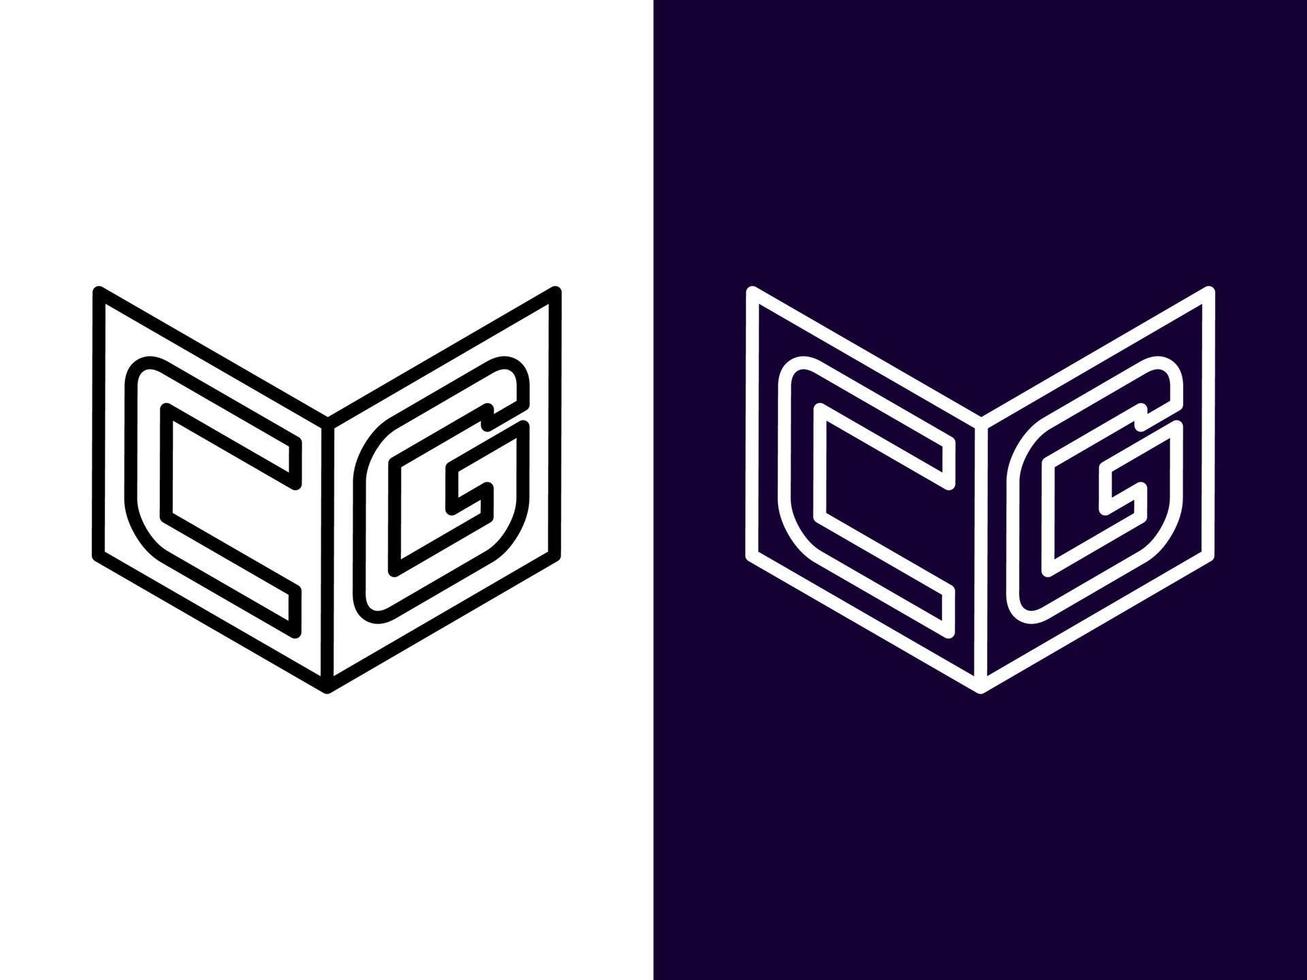 lettre initiale cg création de logo 3d minimaliste et moderne vecteur